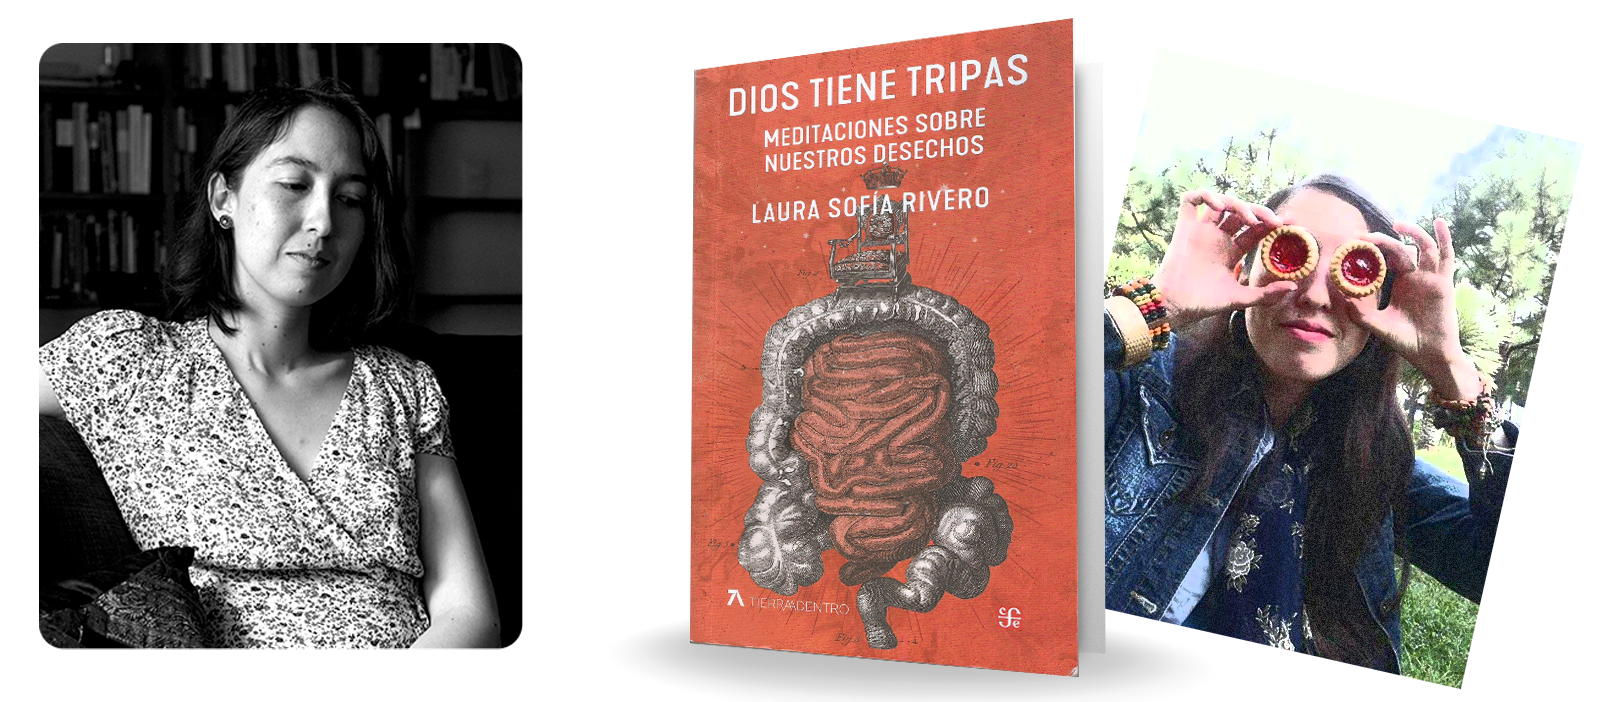  Laura-Sofia-Rivero-libro-Dios-tiene-tripas.png